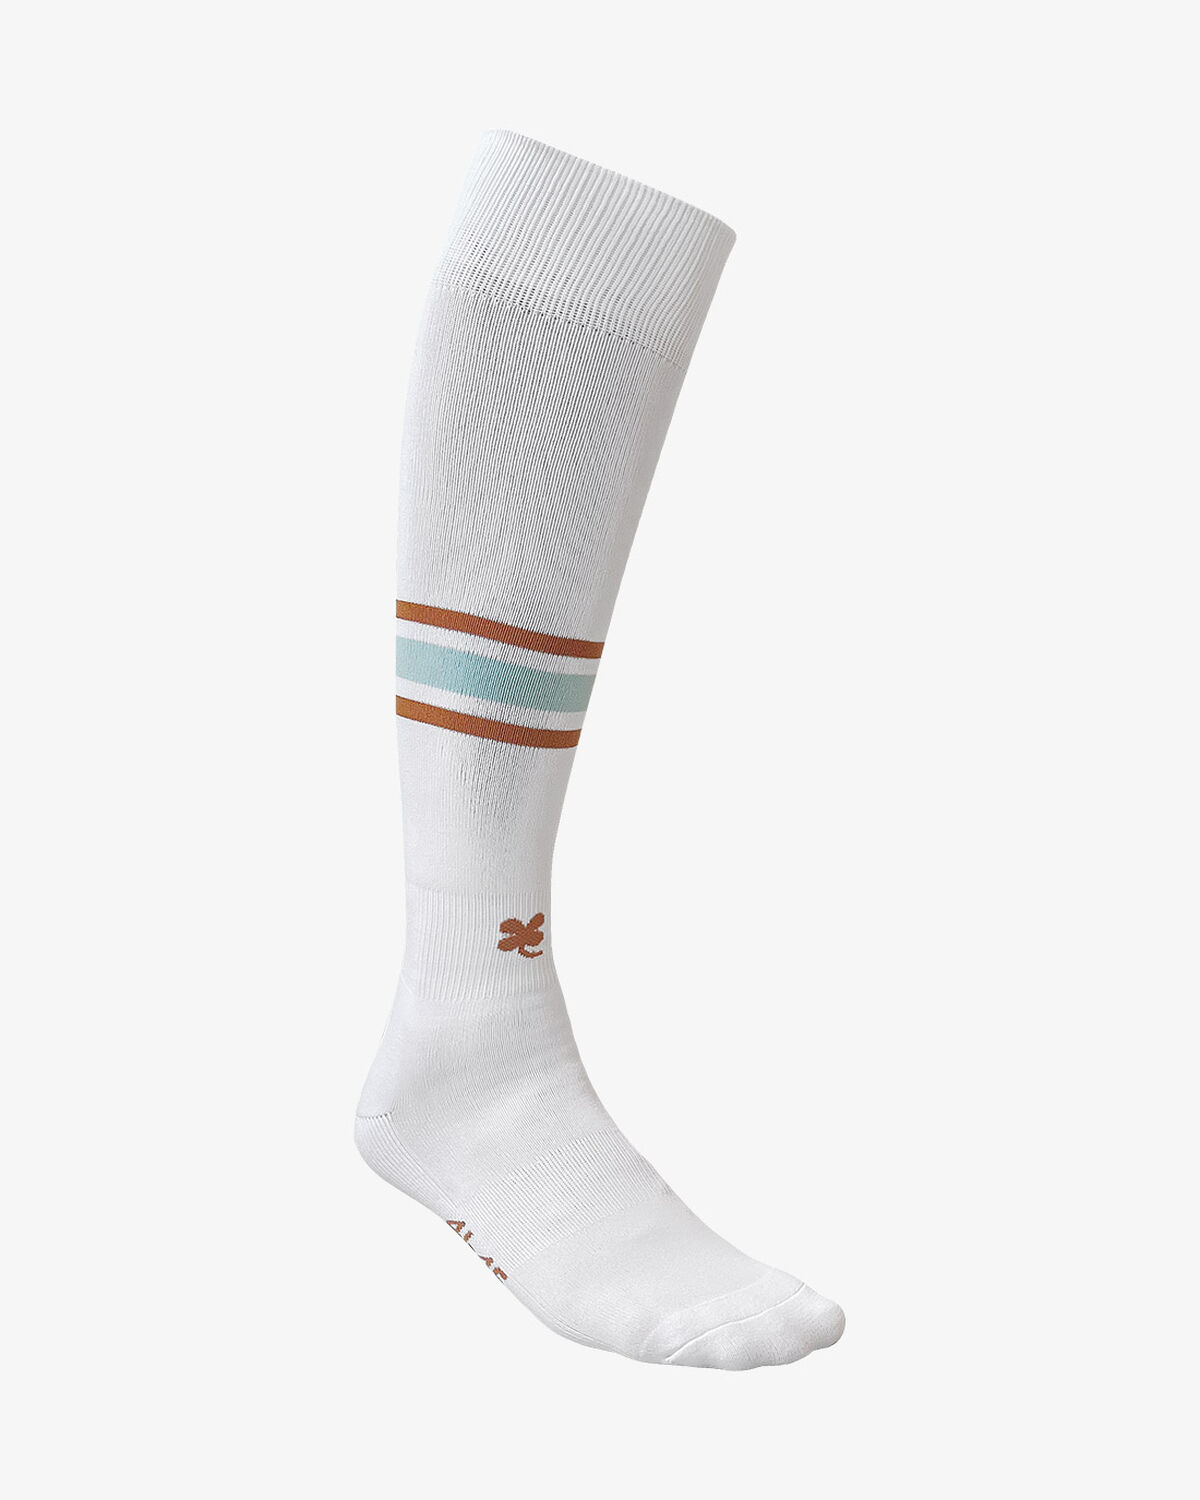 N.E.C. Third Socks 23/24, White, hi-res